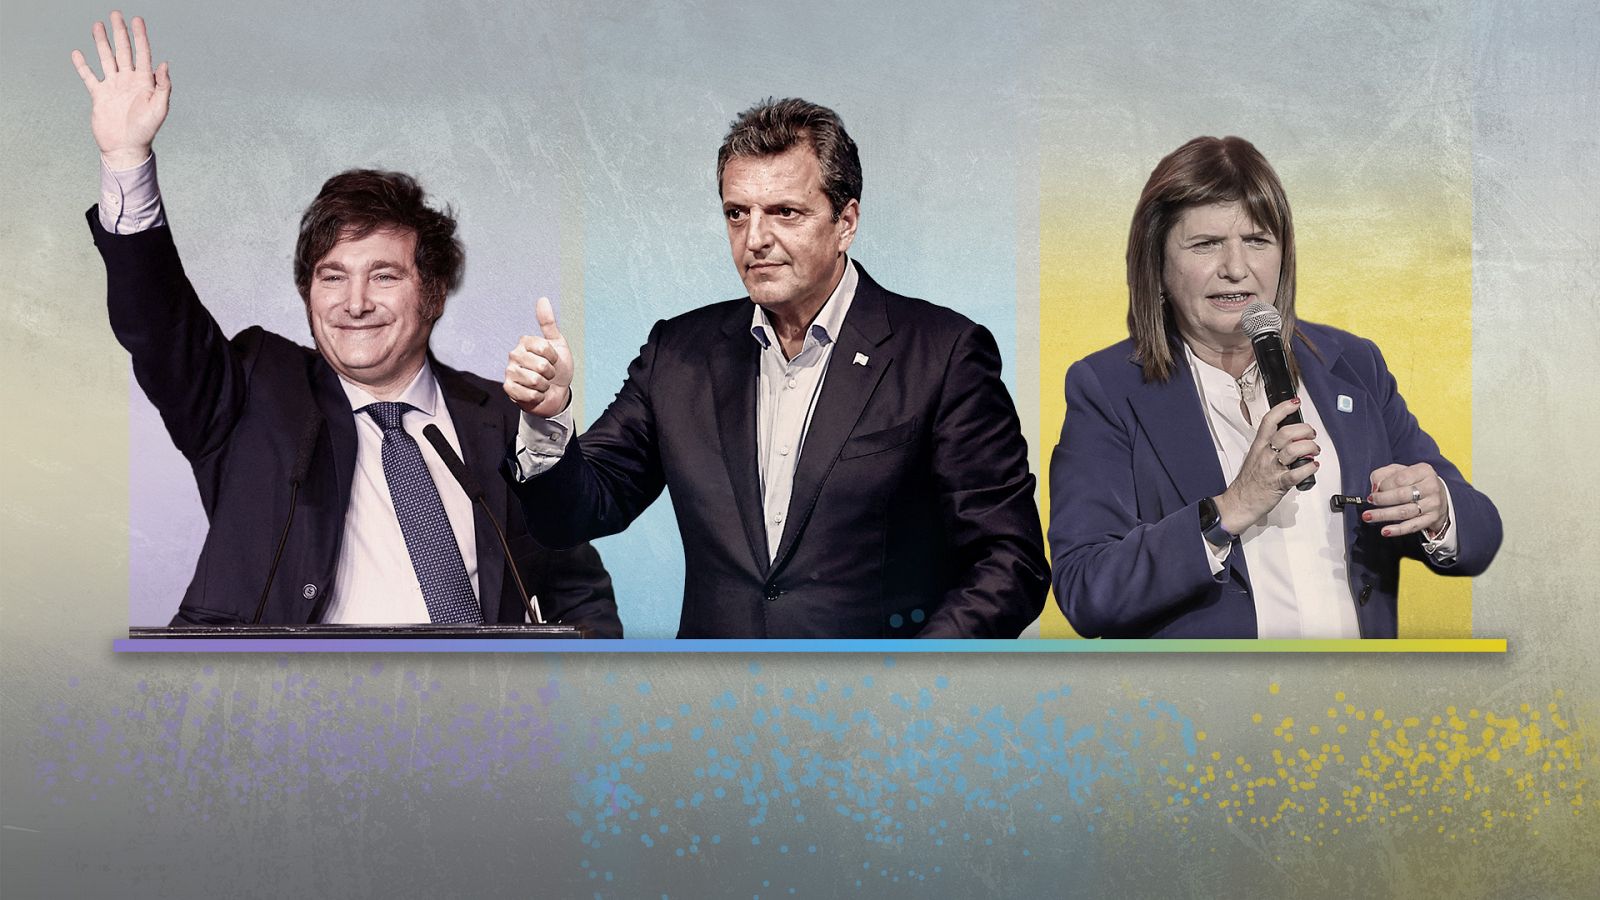 Los candidatos en las elecciones argentinas Javier Milei, Sergio Massa y Patricia Bullrich